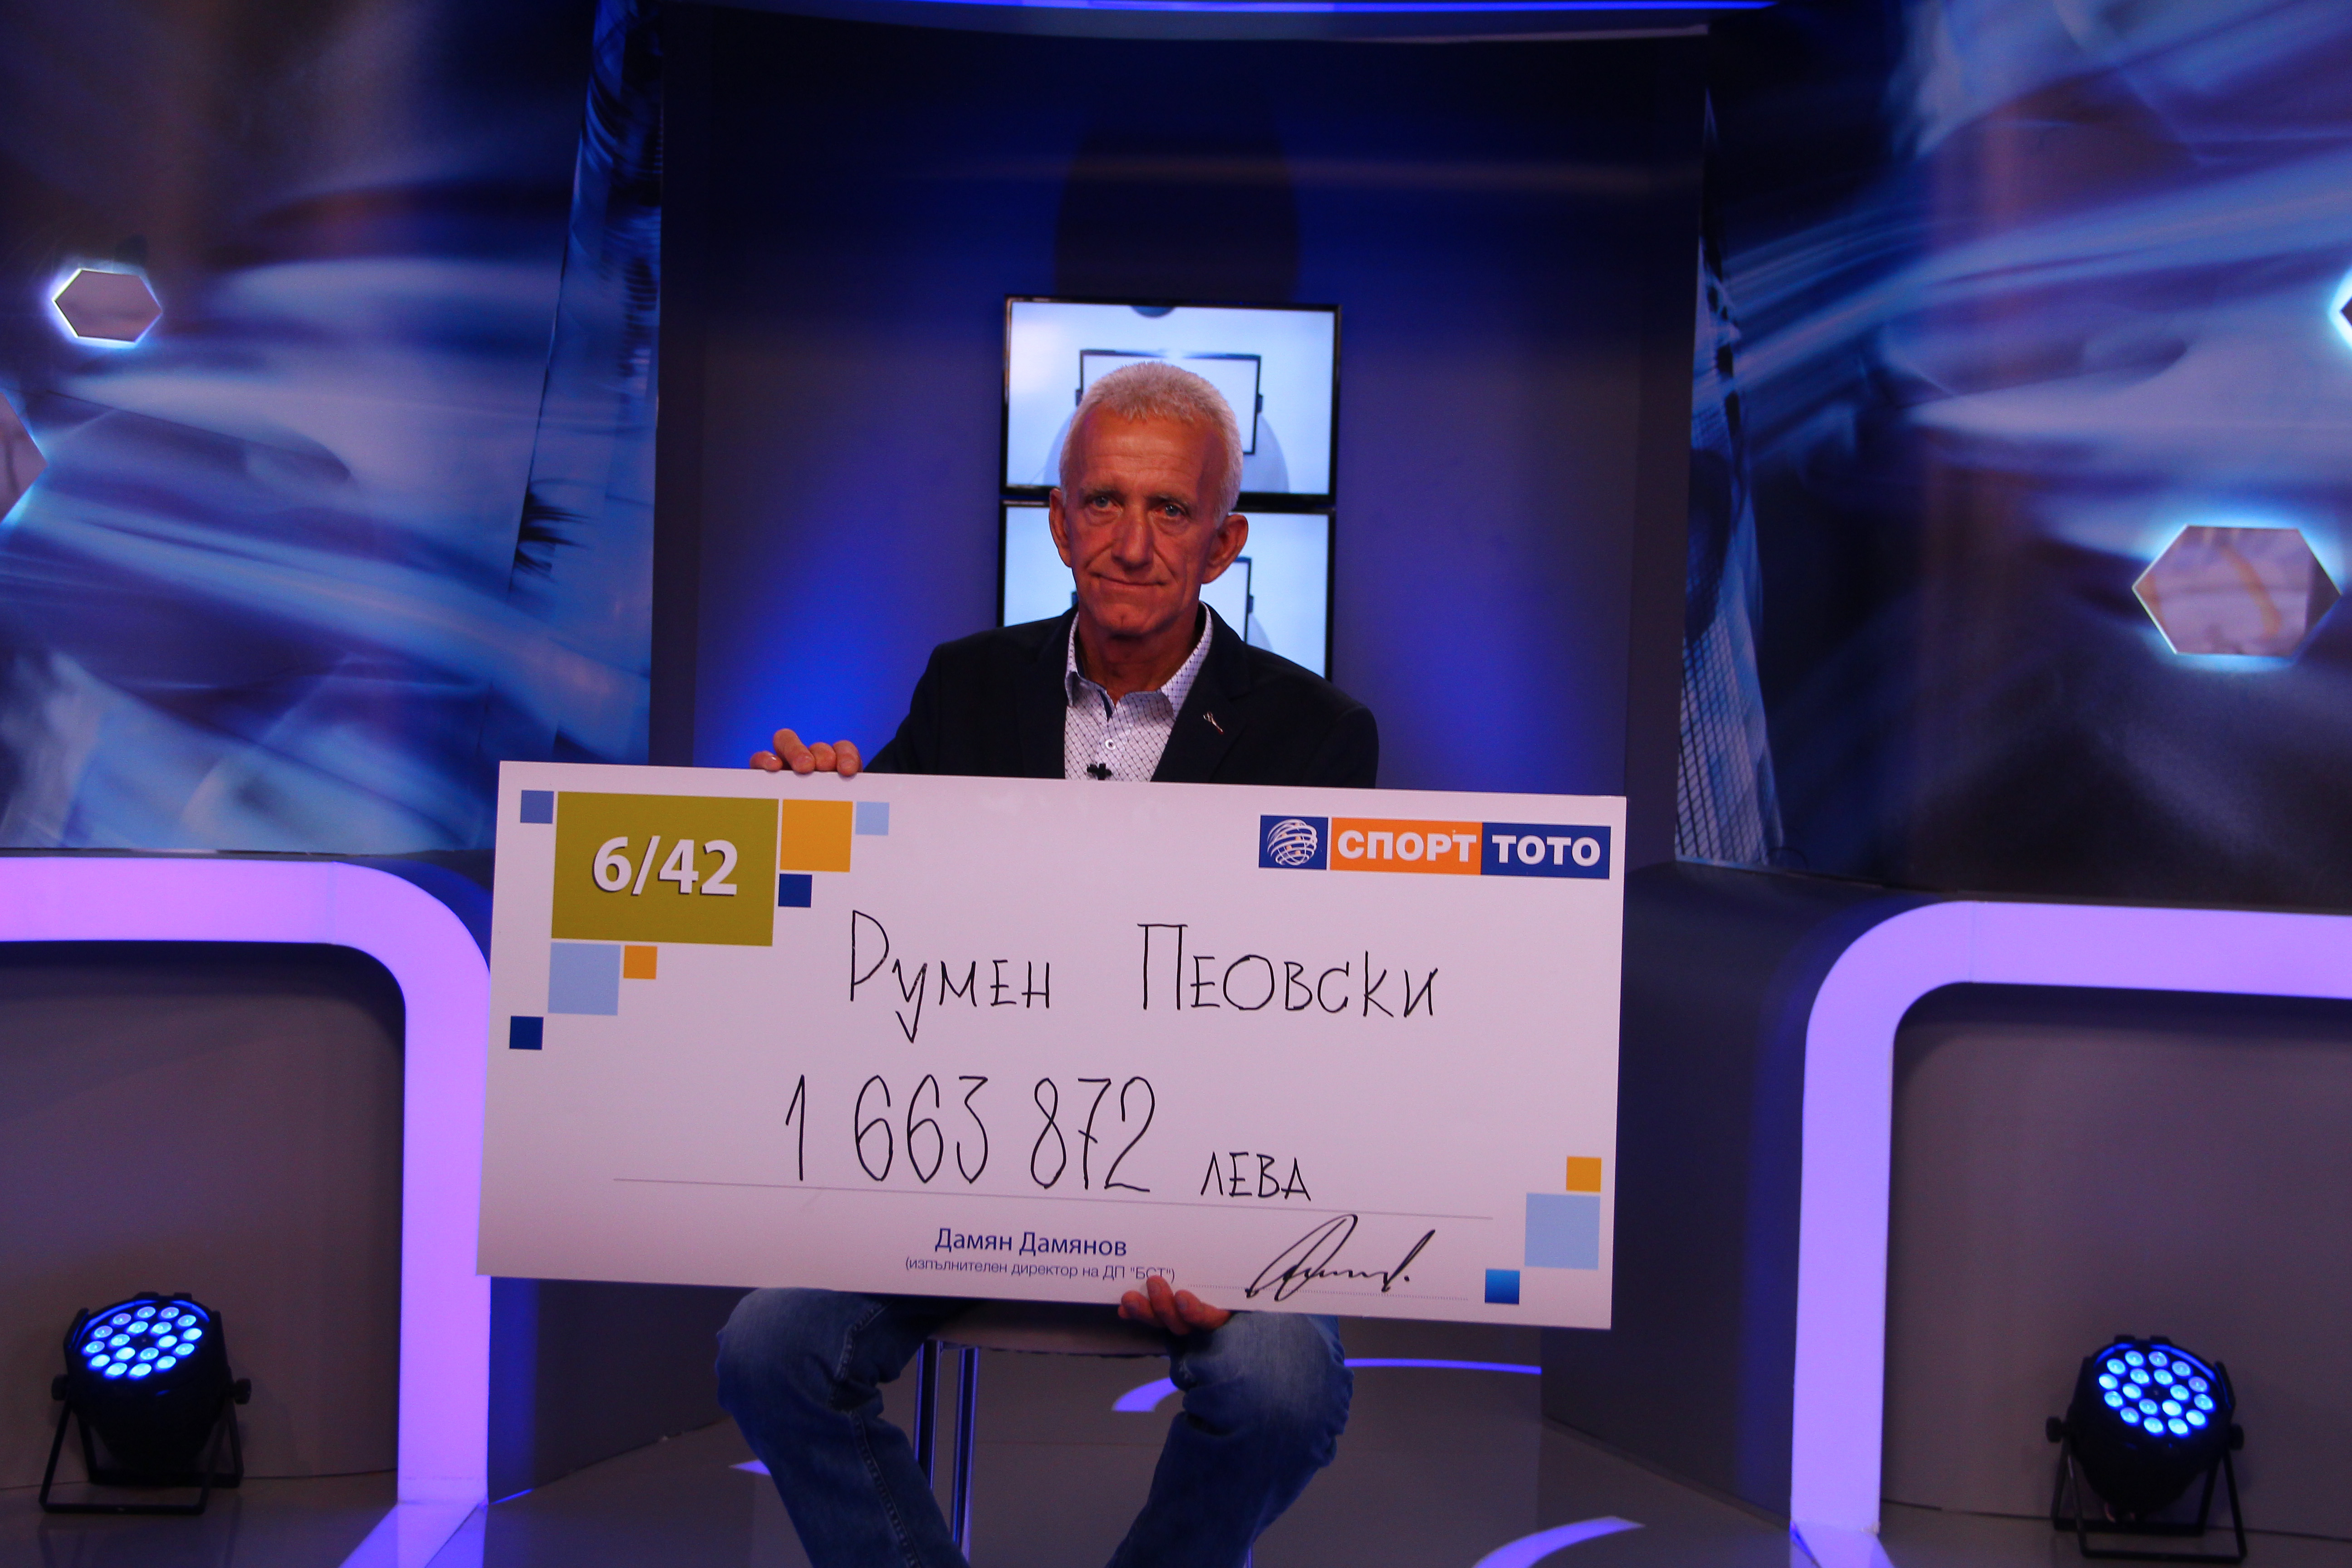 Благоевградчанинът Румен Пеовски е щастливецът, който спечели 1 663 872.70 лева от играта „Тото 2 - 6 от 42“ в 33-и тираж